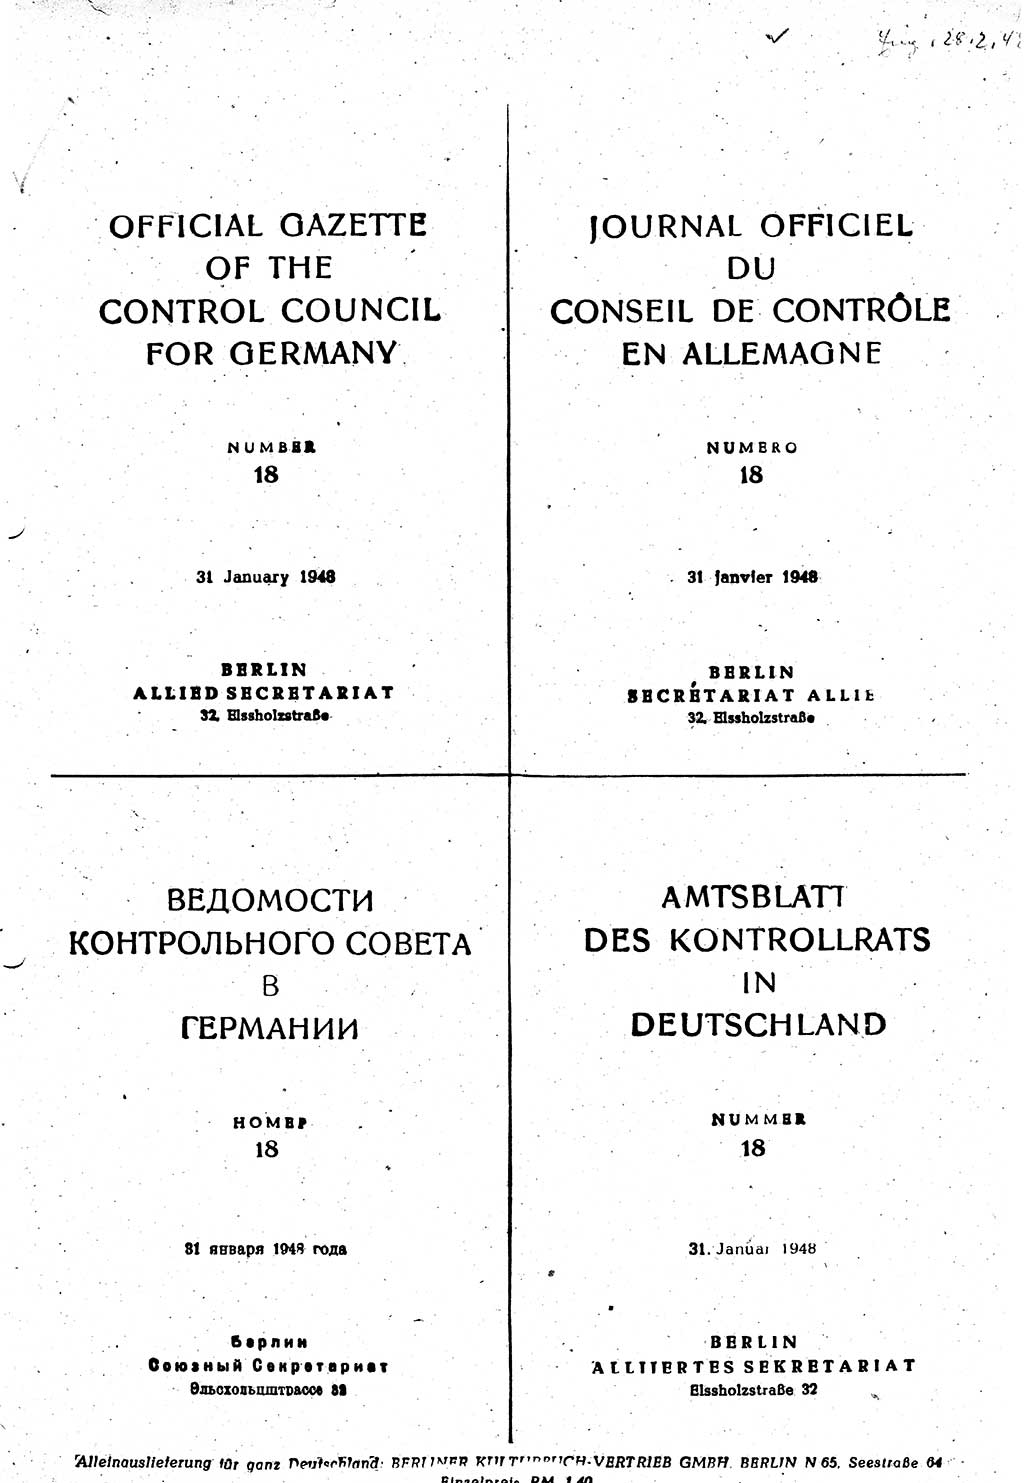 Amtsblatt des Kontrollrats (ABlKR) in Deutschland 1948, Seite 295 (ABlKR Dtl. 1948, S. 295)